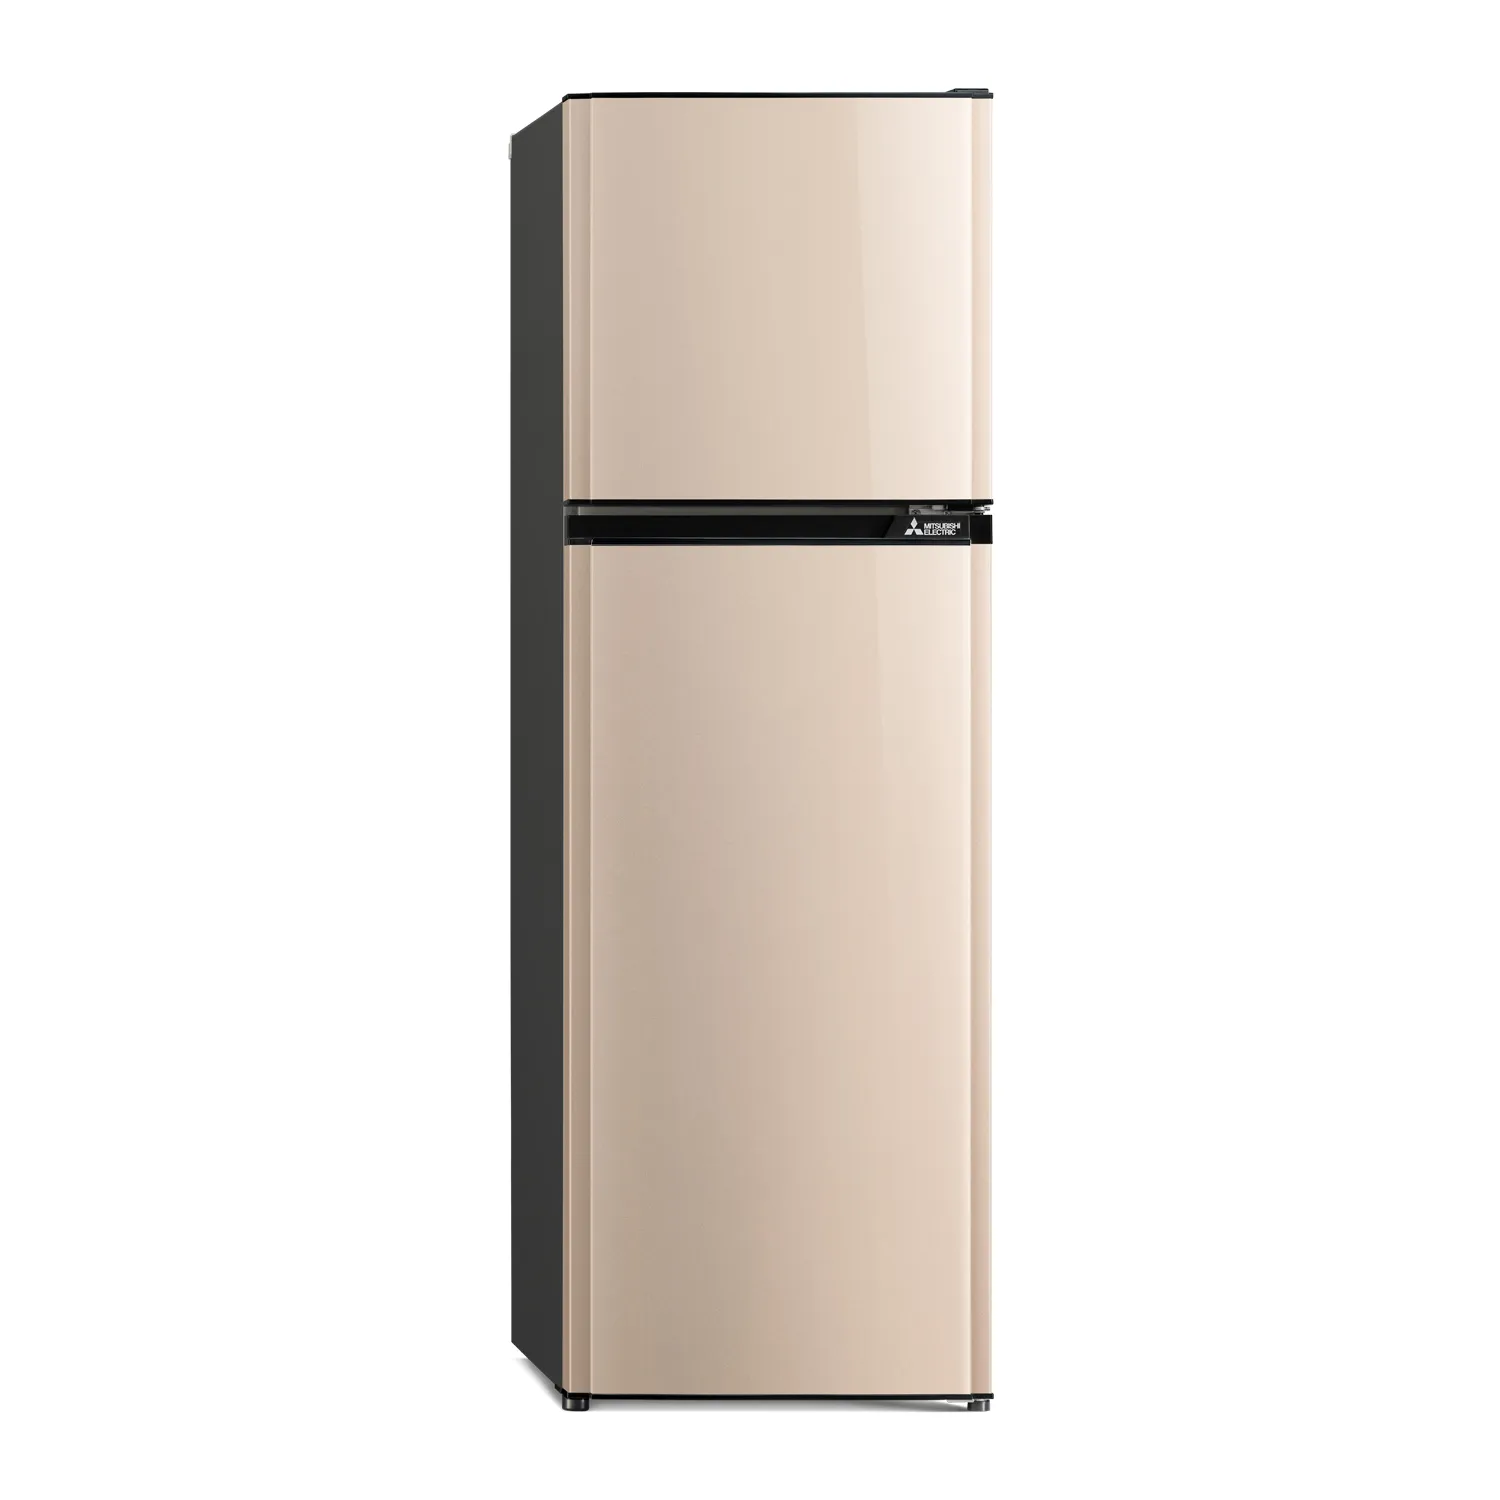 MITSUBISHI ELECTRIC ตู้เย็น 2 ประตู (MR-FV29P) FLAT DESIGN (ชั้นวางกระจกนิรภัย) ขนาด 231 ลิตร 9.7 คิว